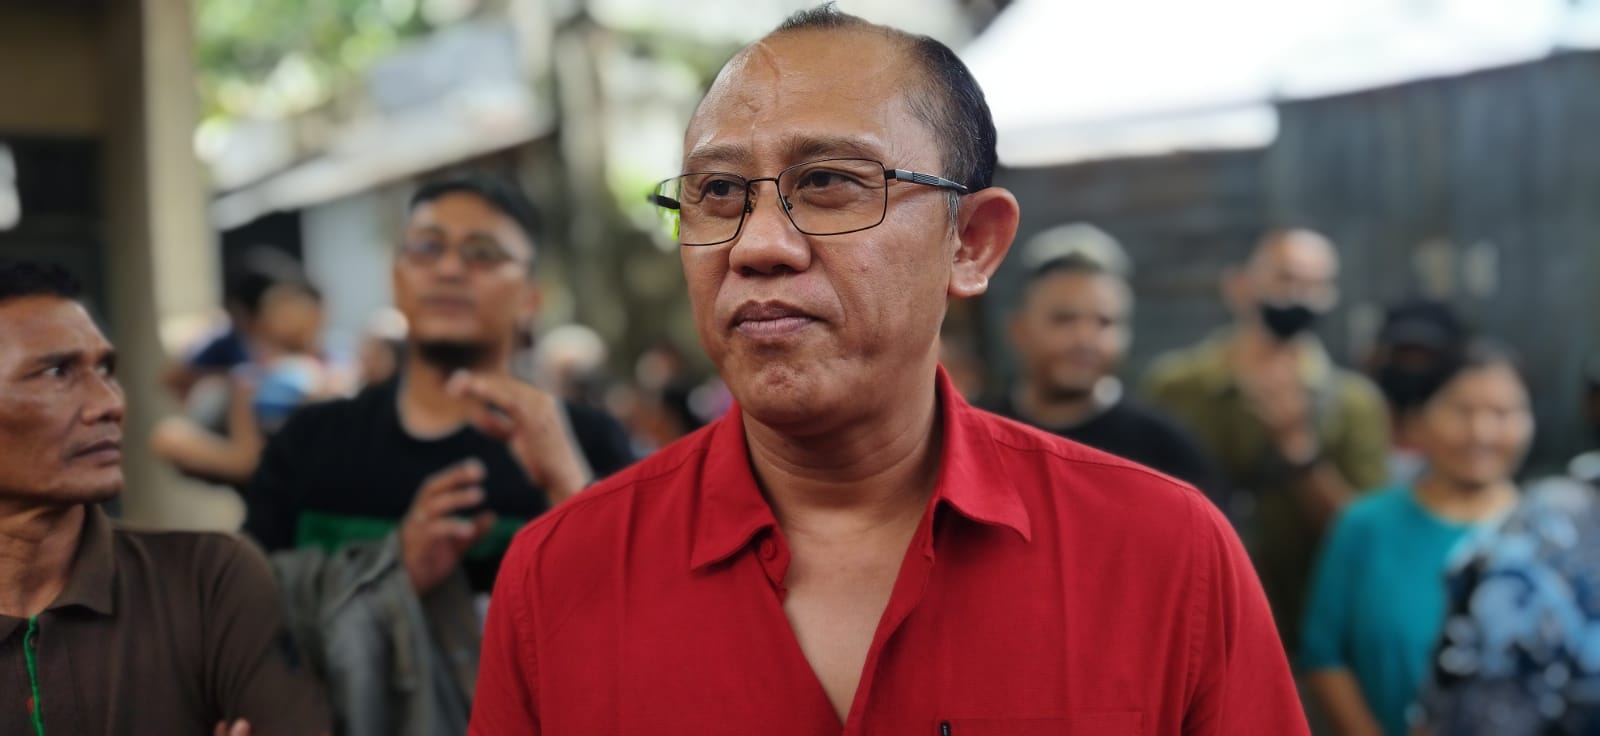 Wakil Ketua DPRD Kota Bandung, Achmad Nugraha. Sabtu (21/5). Foto. Sandi Nugraha.